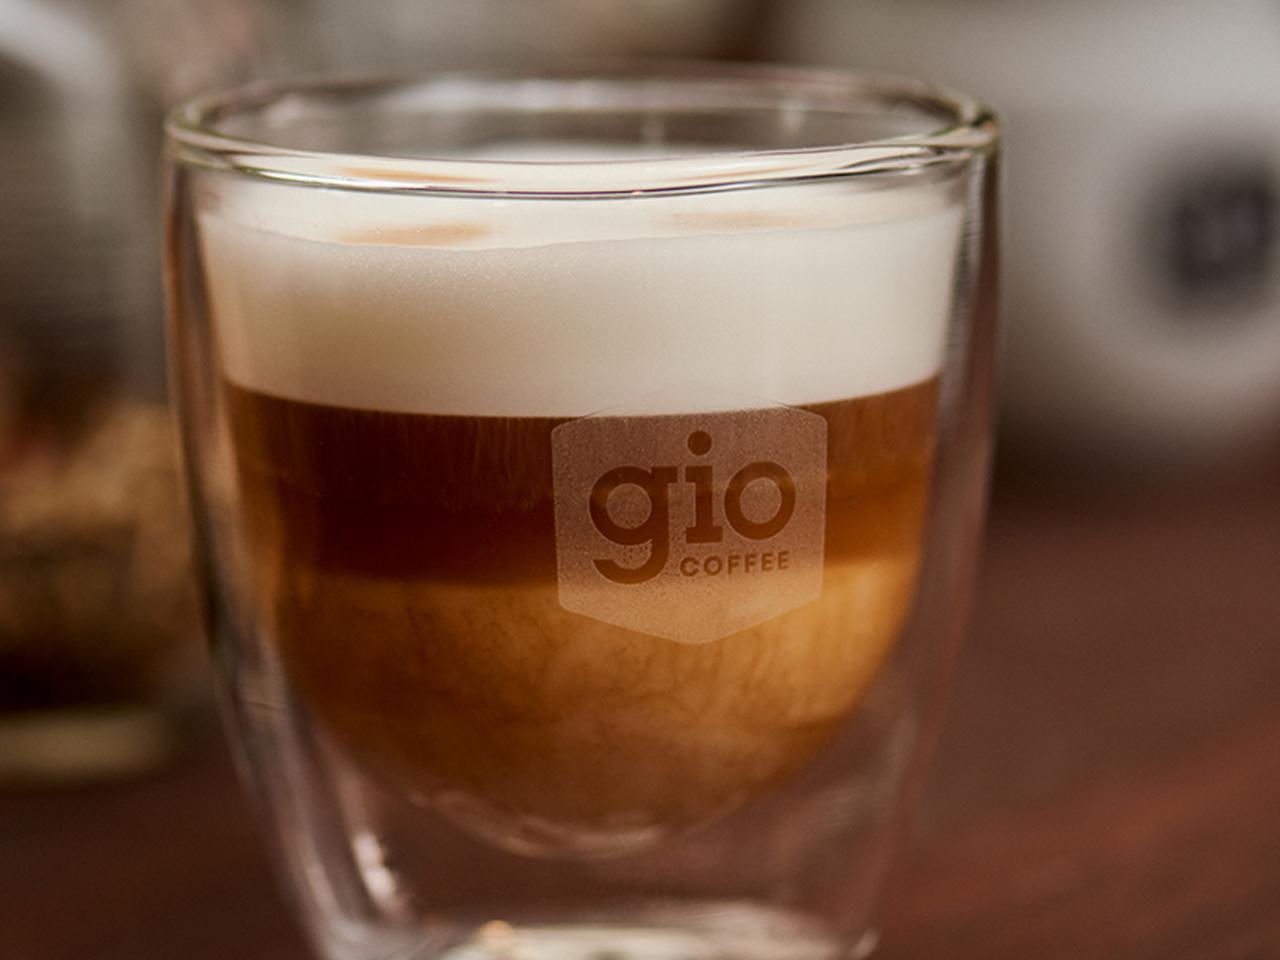 Gio Coffee heeft een koffieoplossing met verse melk voor zakelijk gebruik